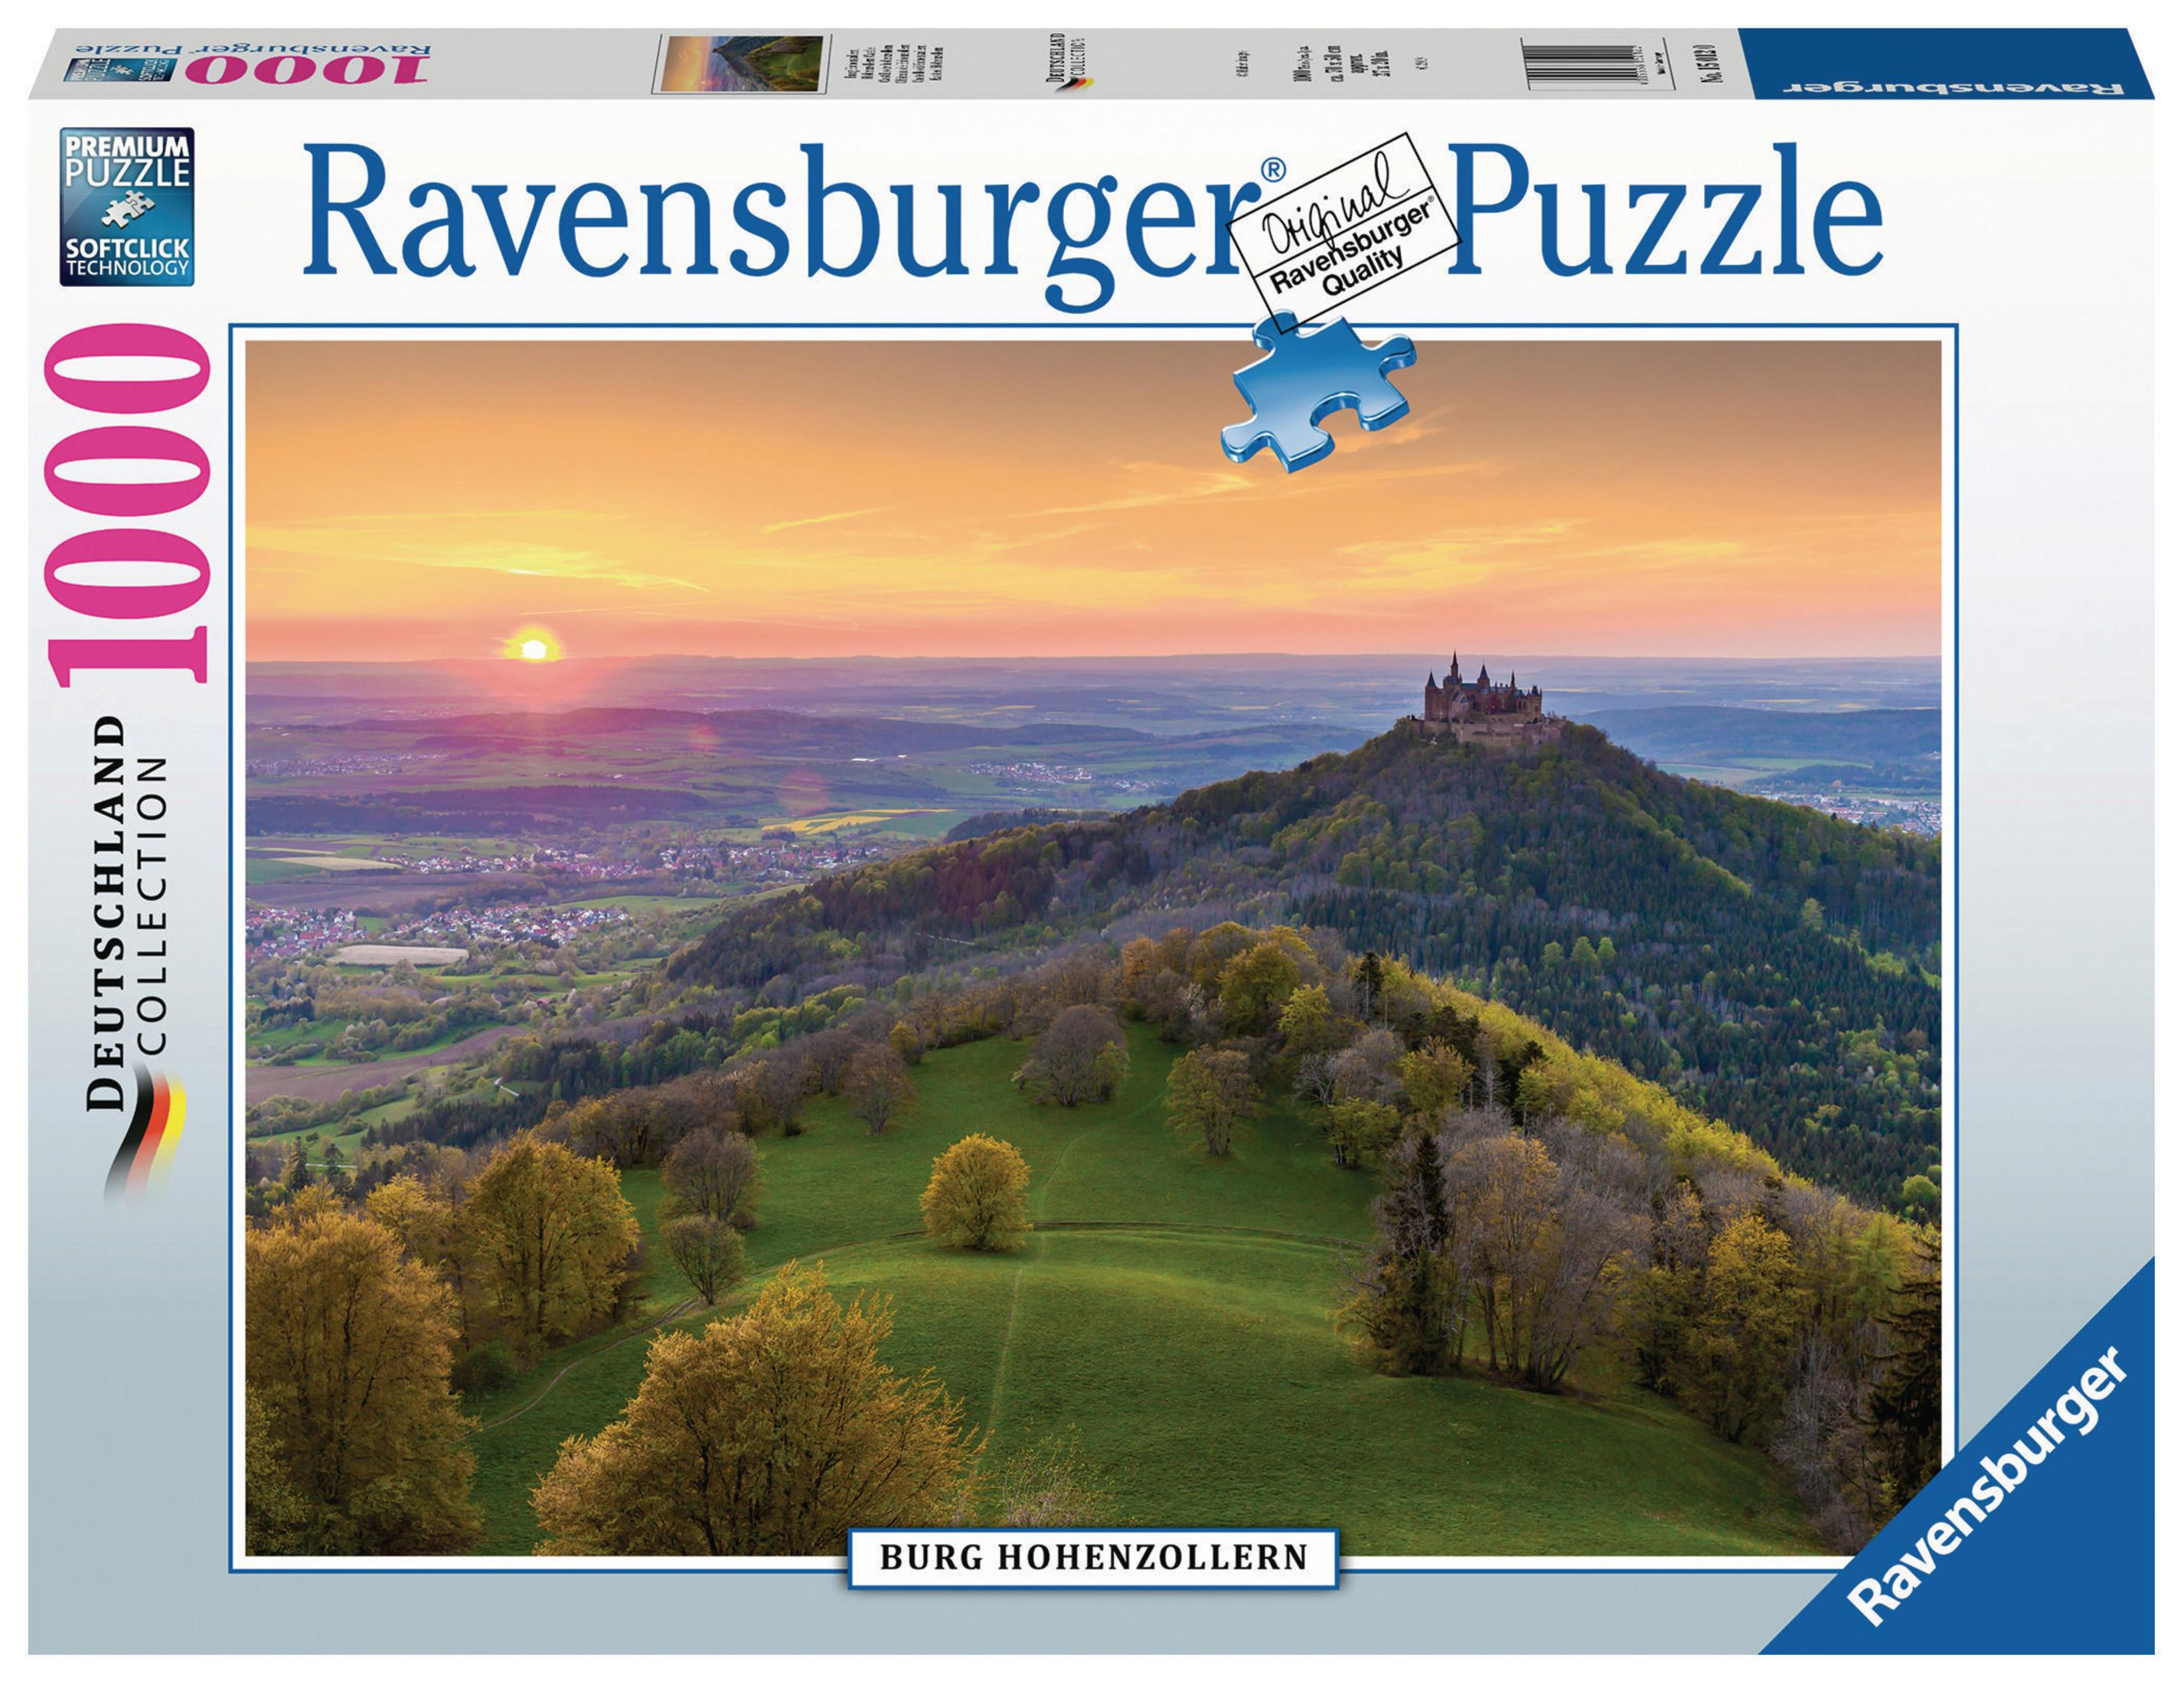 BURG 15012 HOHENZOLLERN RAVENSBURGER Puzzle